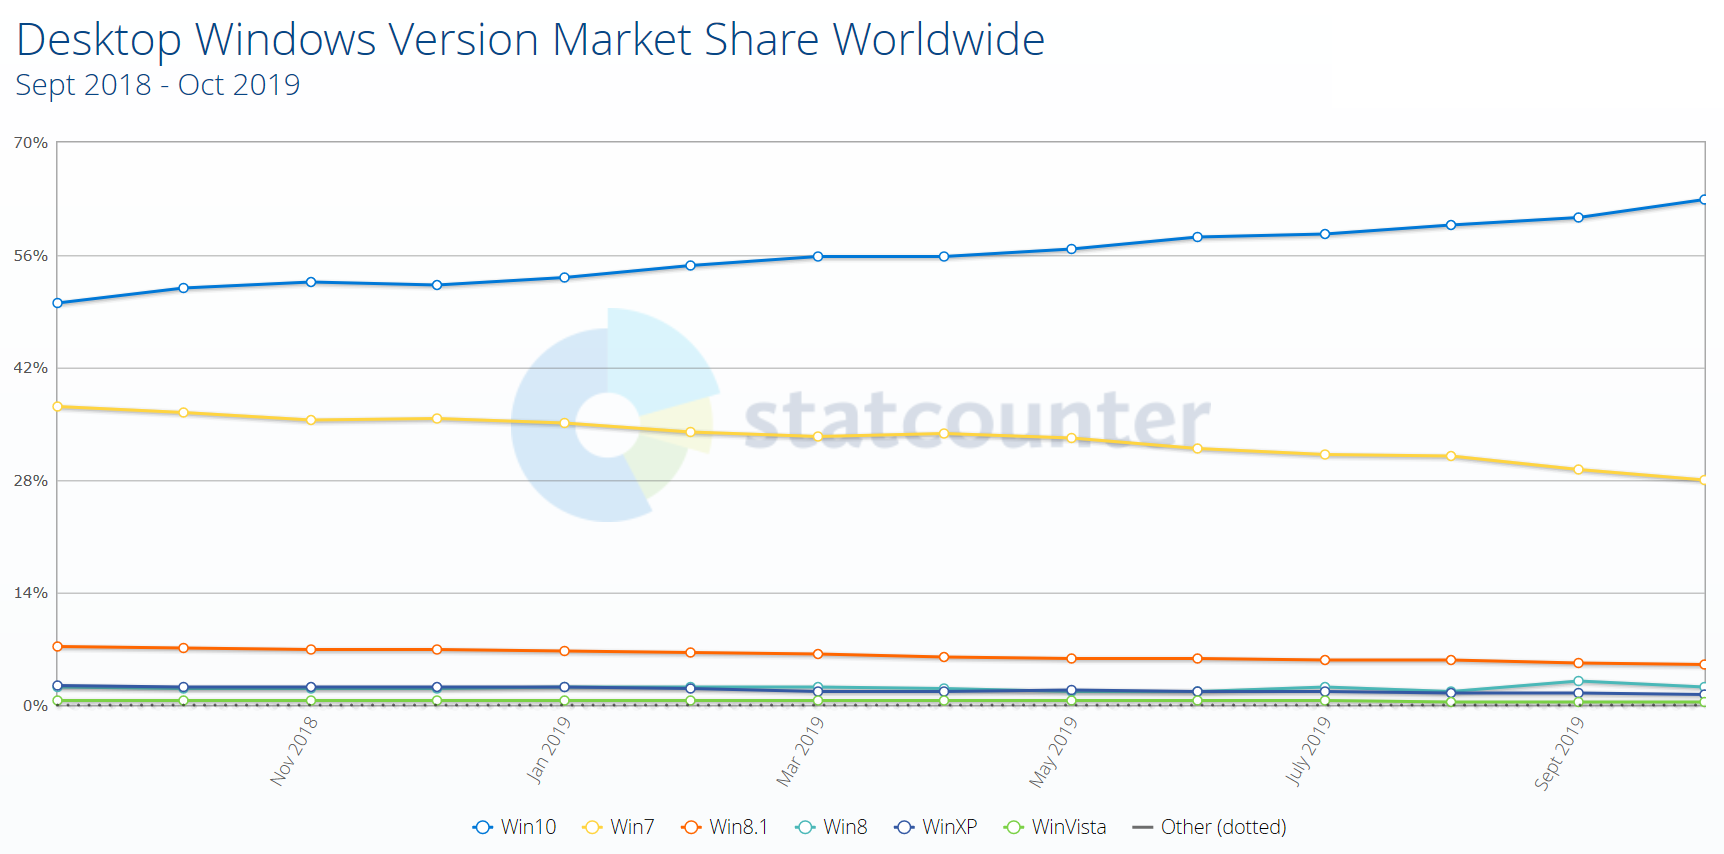 StatCounter отмечает дальнейшее сокращение рыночной доли Windows 7